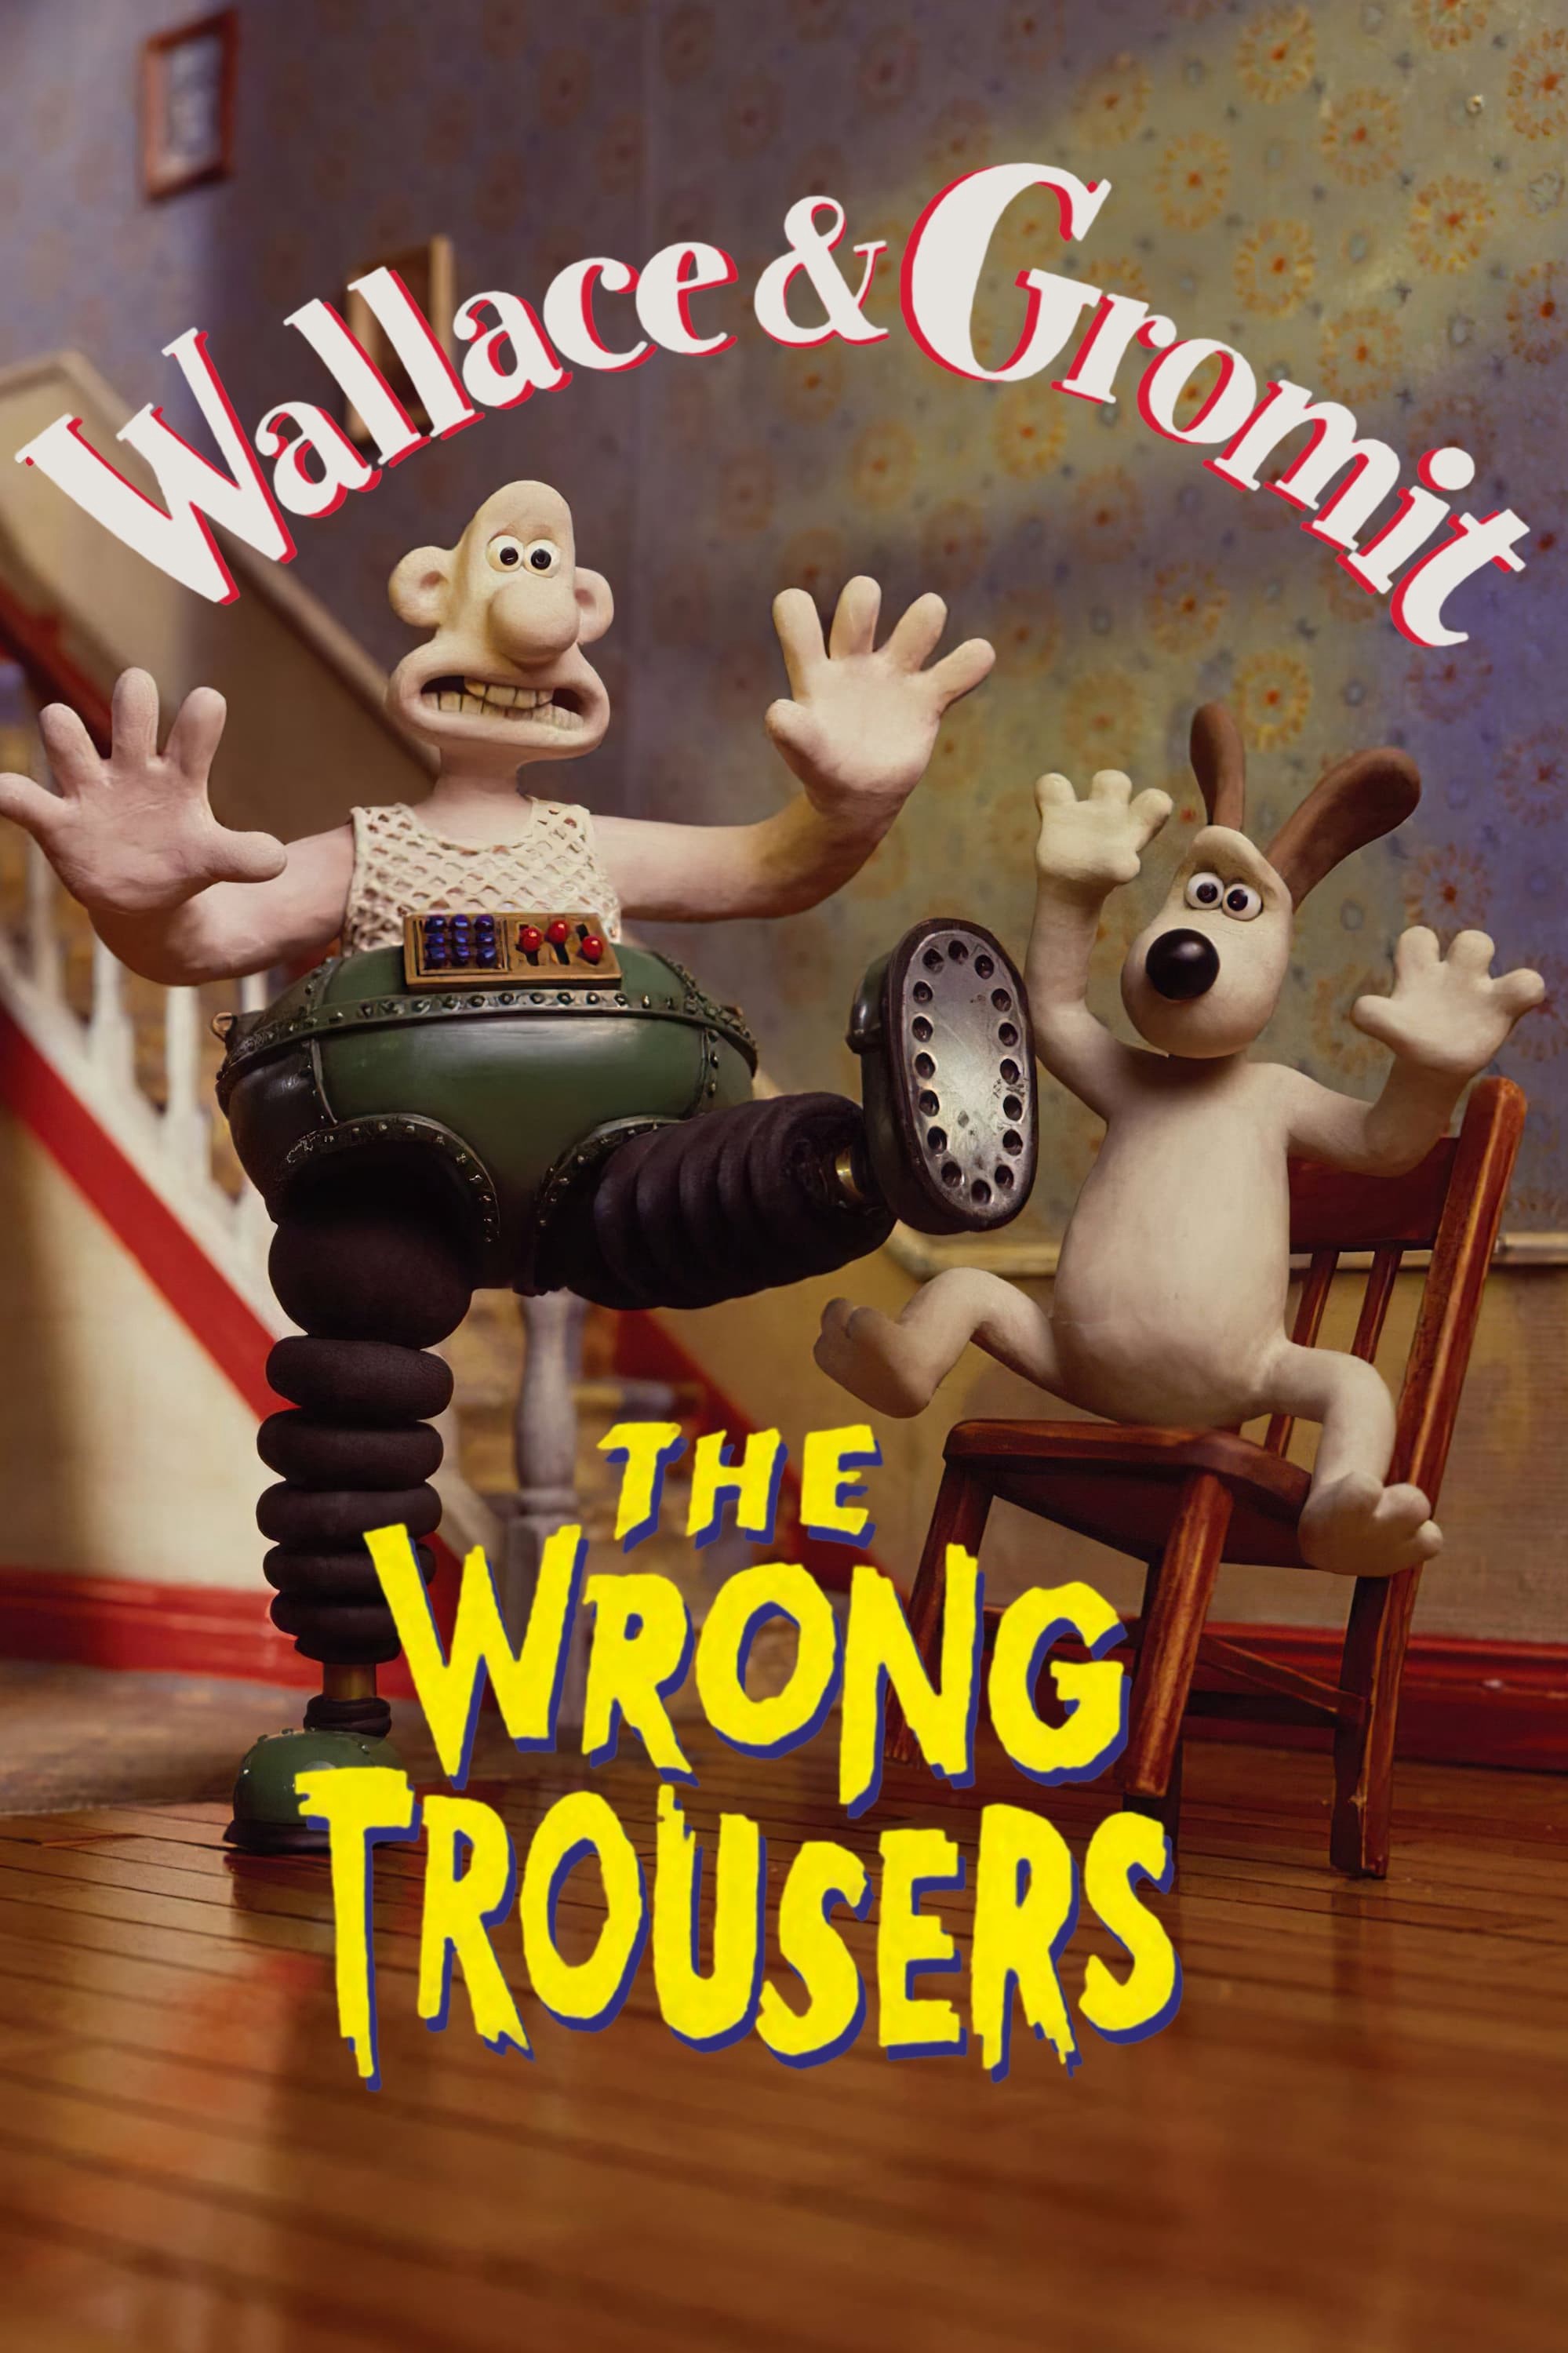  Wallace và Gromit - Chiếc Quần Rắc Rối 1993